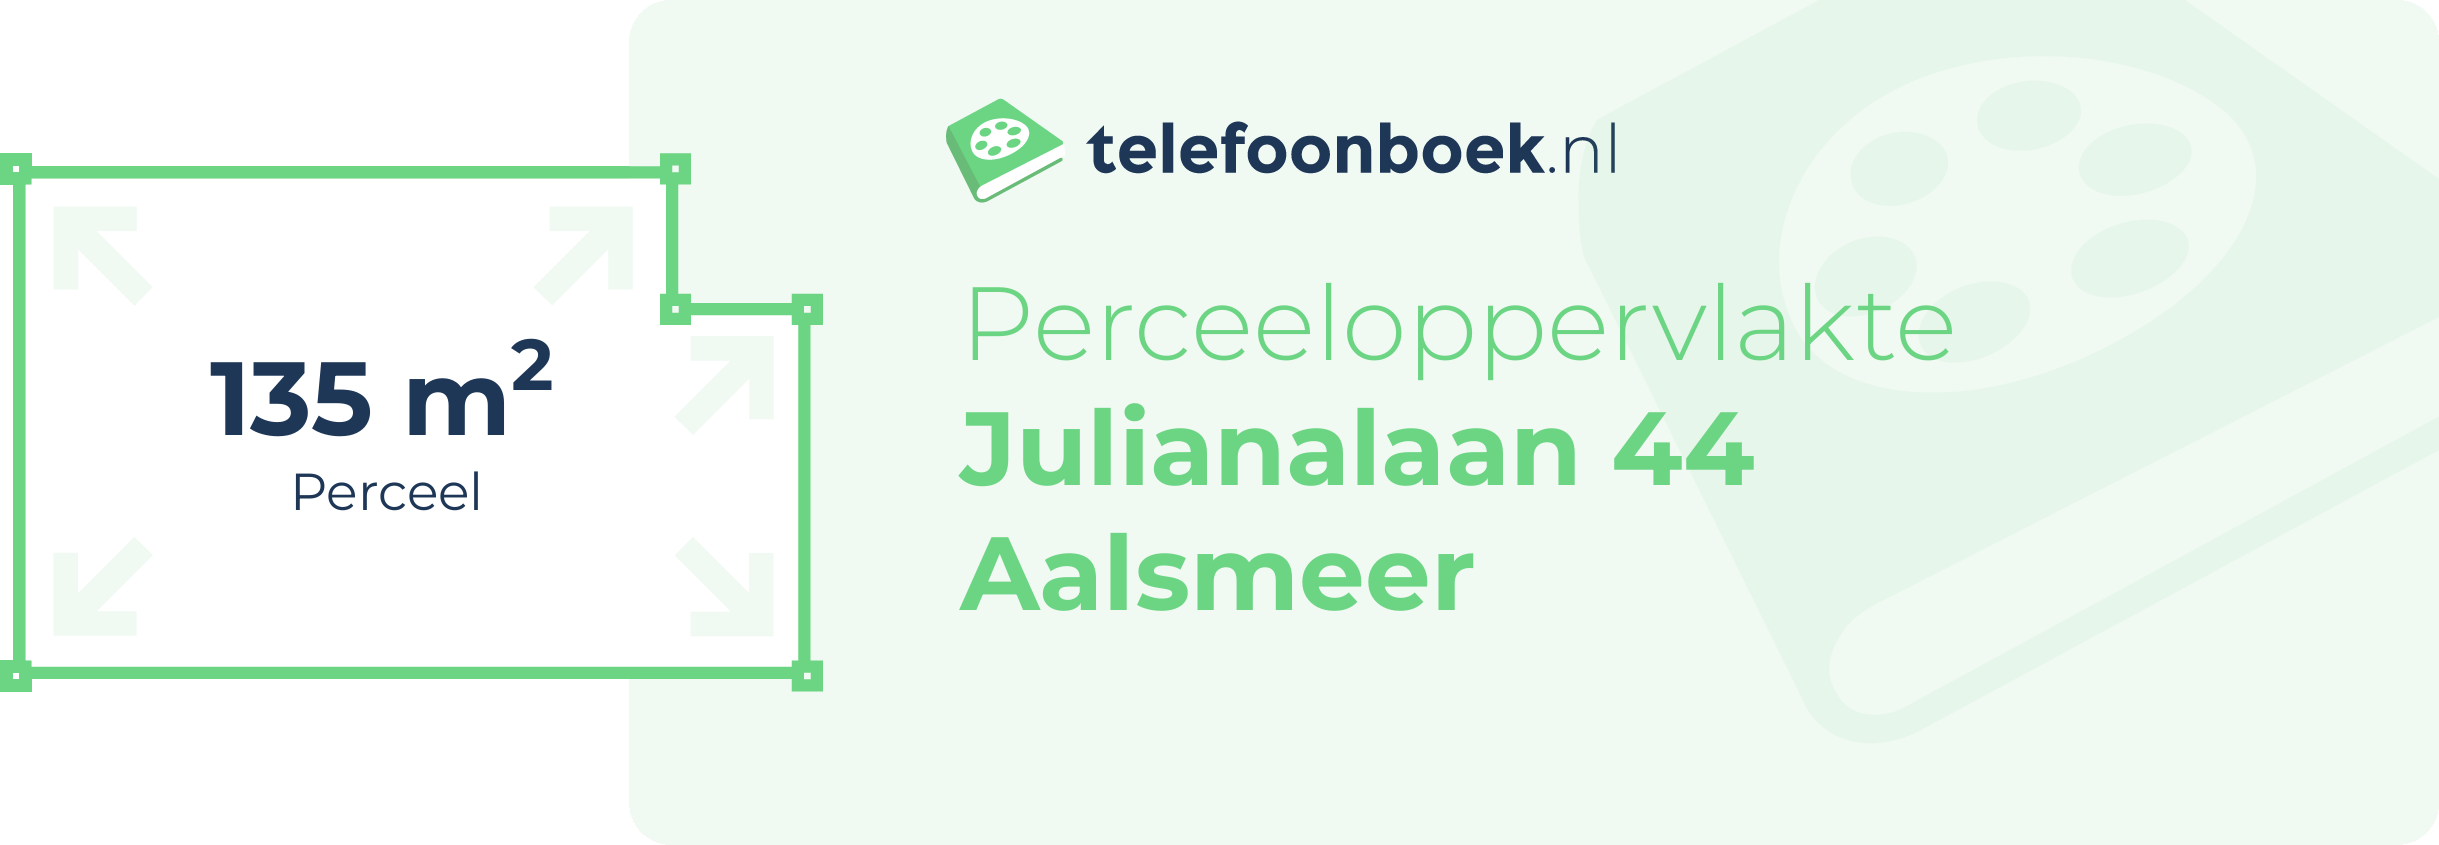 Perceeloppervlakte Julianalaan 44 Aalsmeer